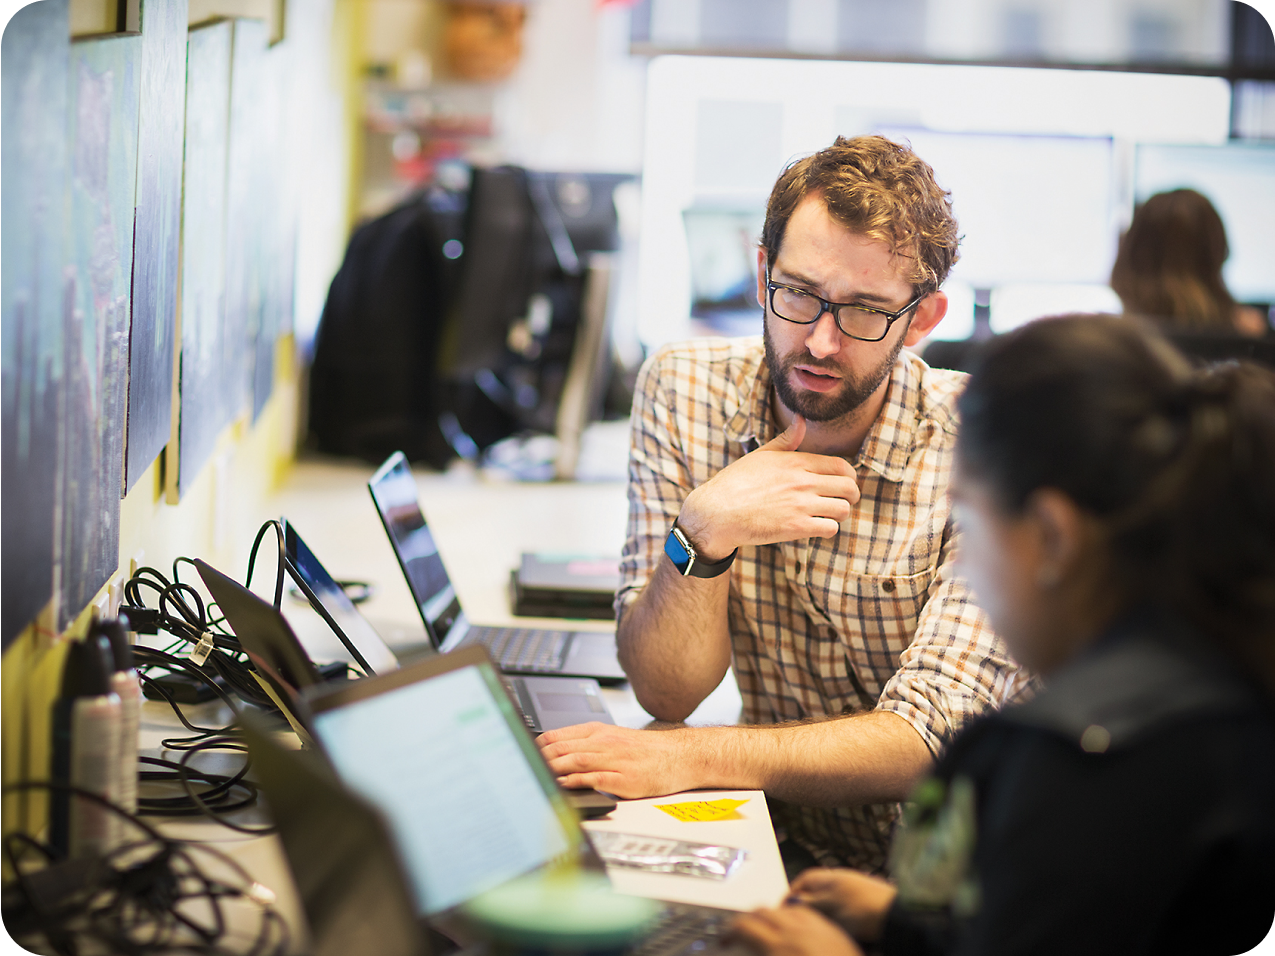 眼鏡をかけたひげを生やした男性が、忙しいオフィス環境でラノート PC を使用している女性同僚と議論しながら身振り手振りをする。